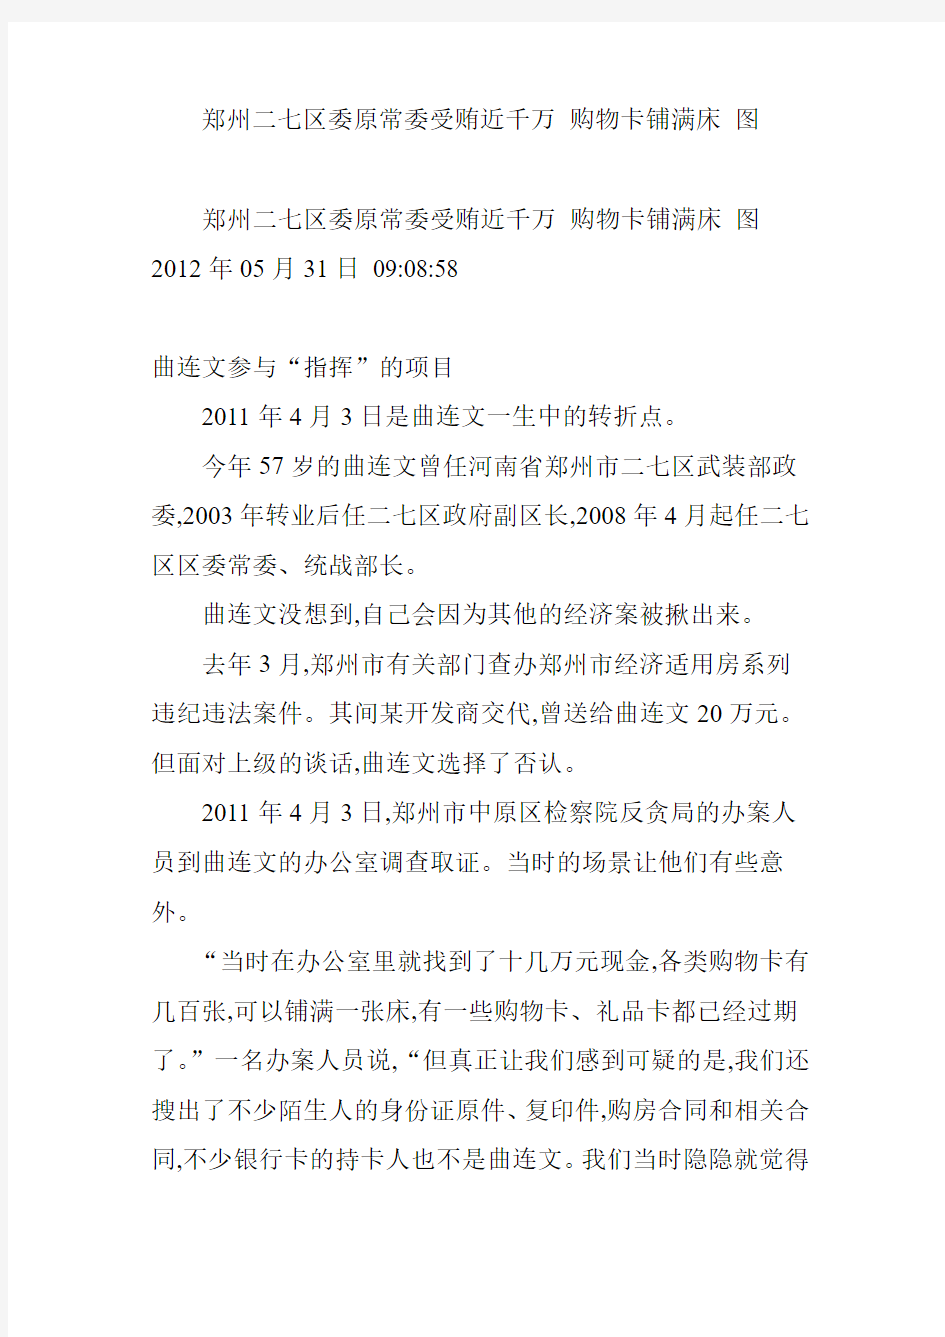 郑州二七区委原常委受贿近千万 购物卡铺满床 图